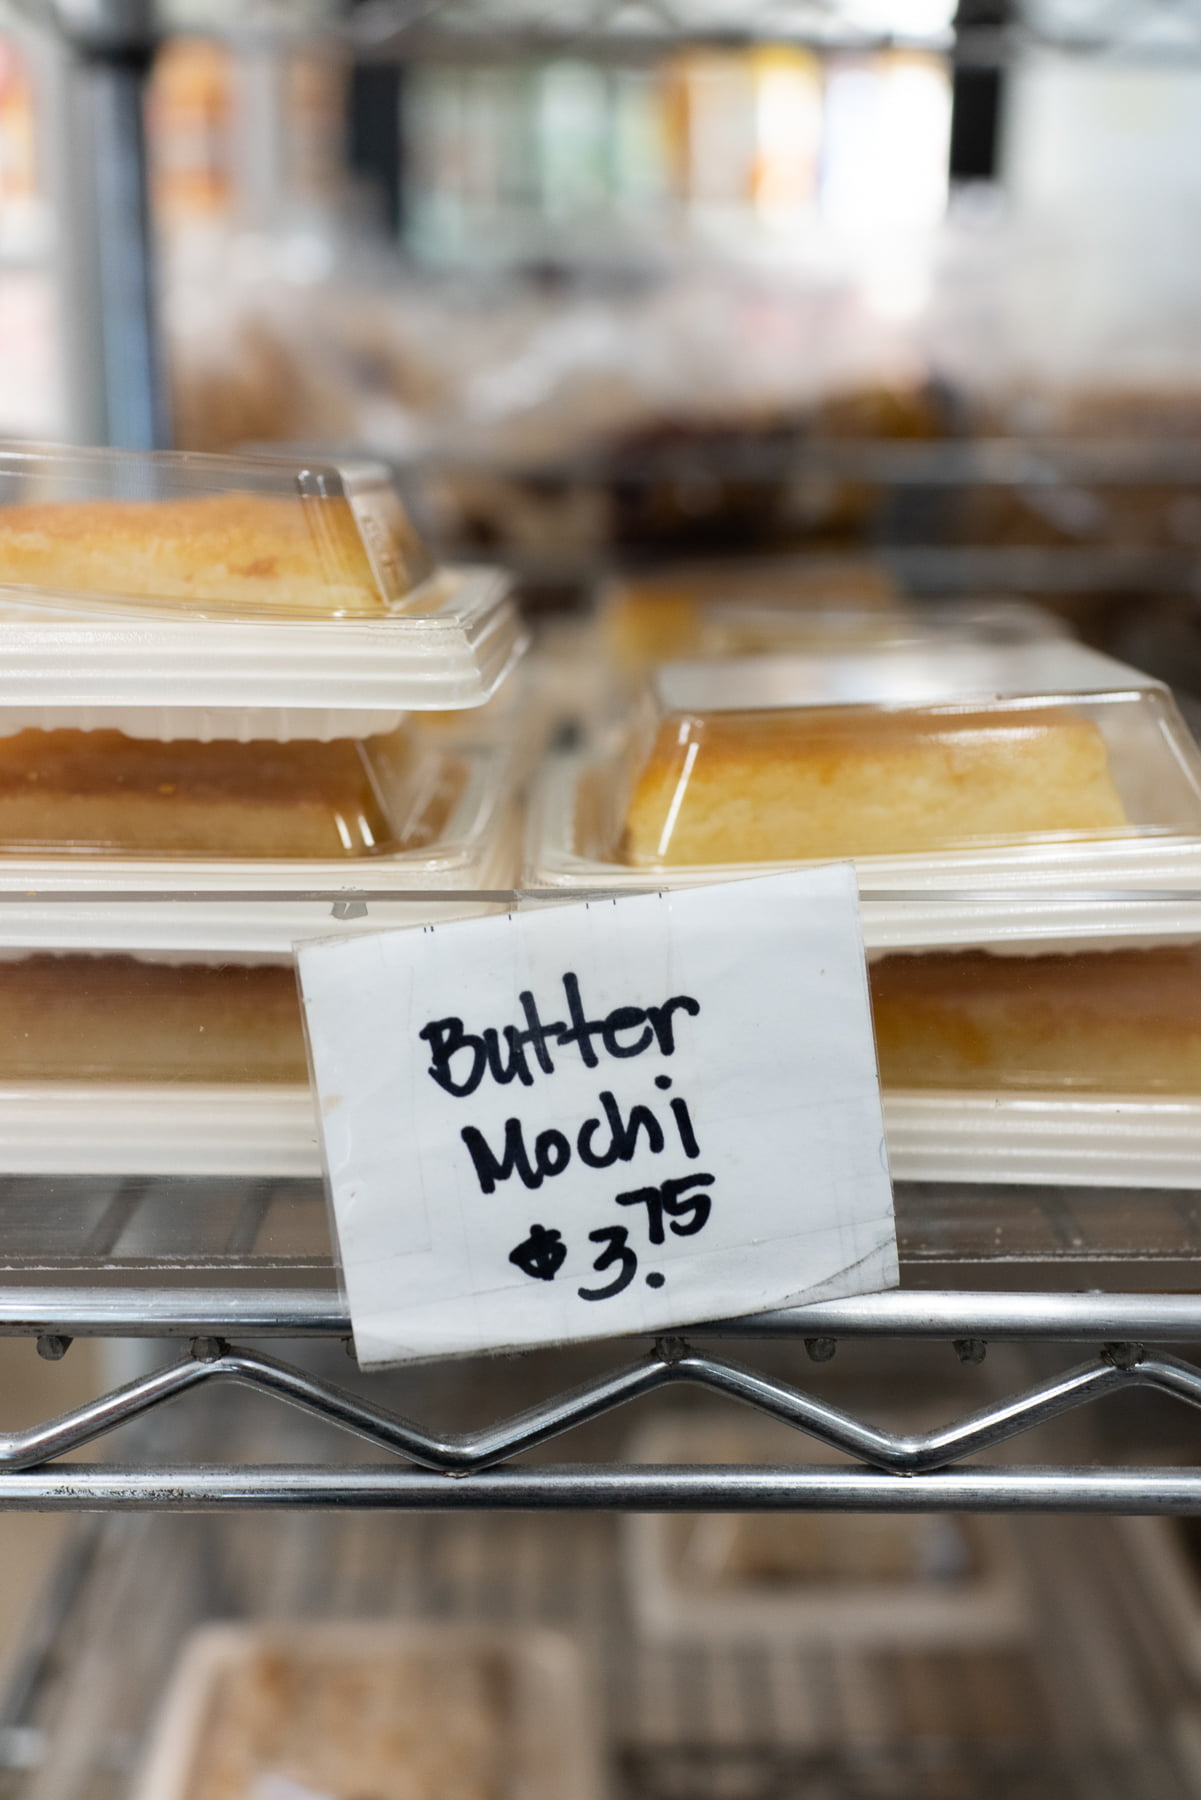 Butter mochi from Diamond Head Bakery